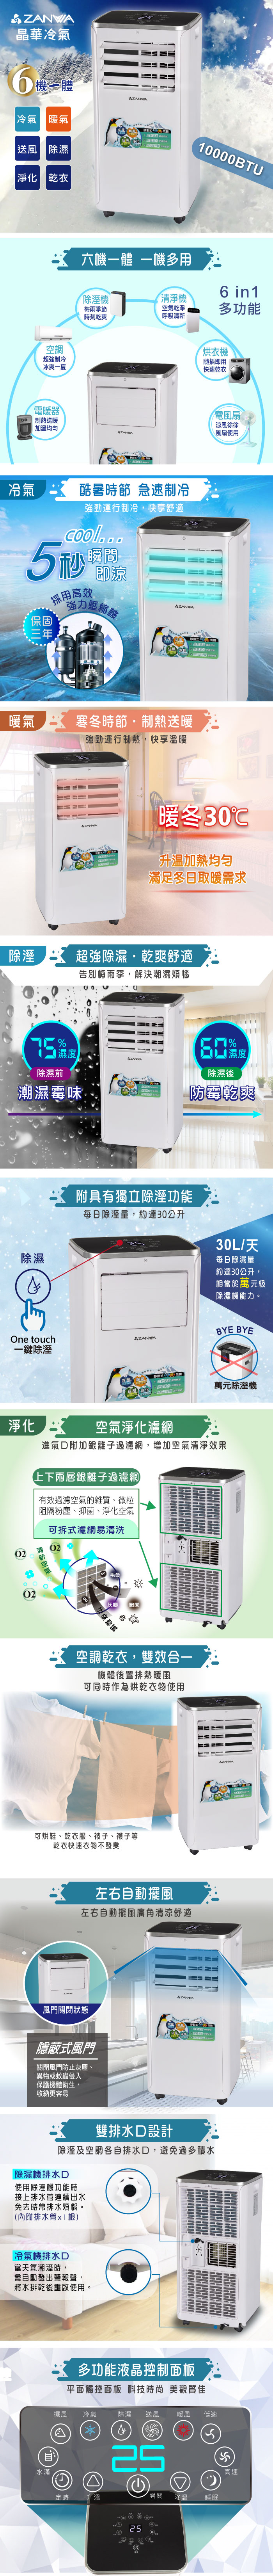 【ZANWA晶華】10000BTU多功能冷暖型移動式冷氣機/空調(ZW-1360